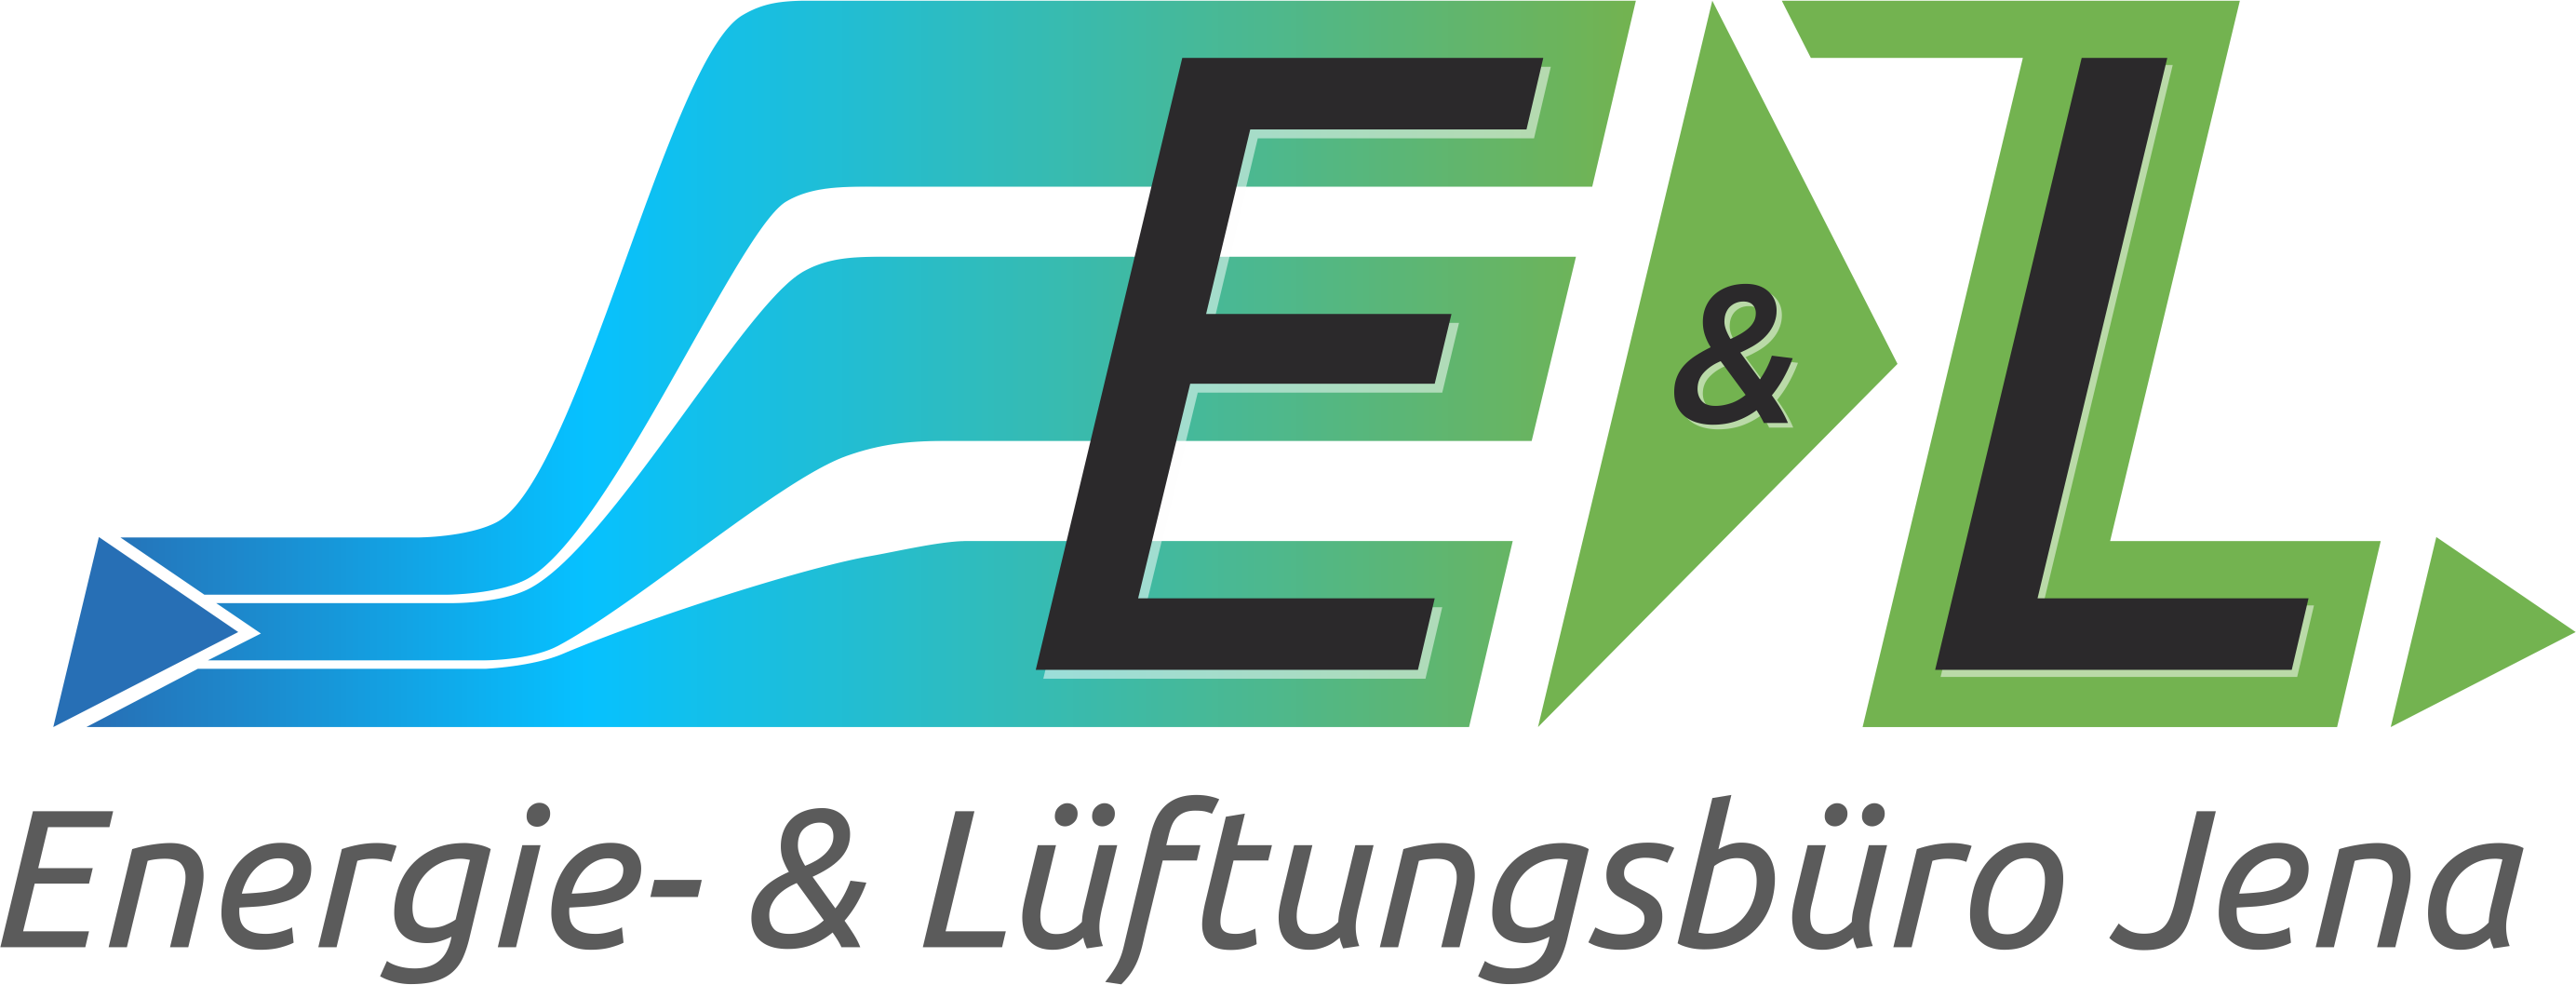 E & L Jena | Energie- & Lüftungsbüro Jena